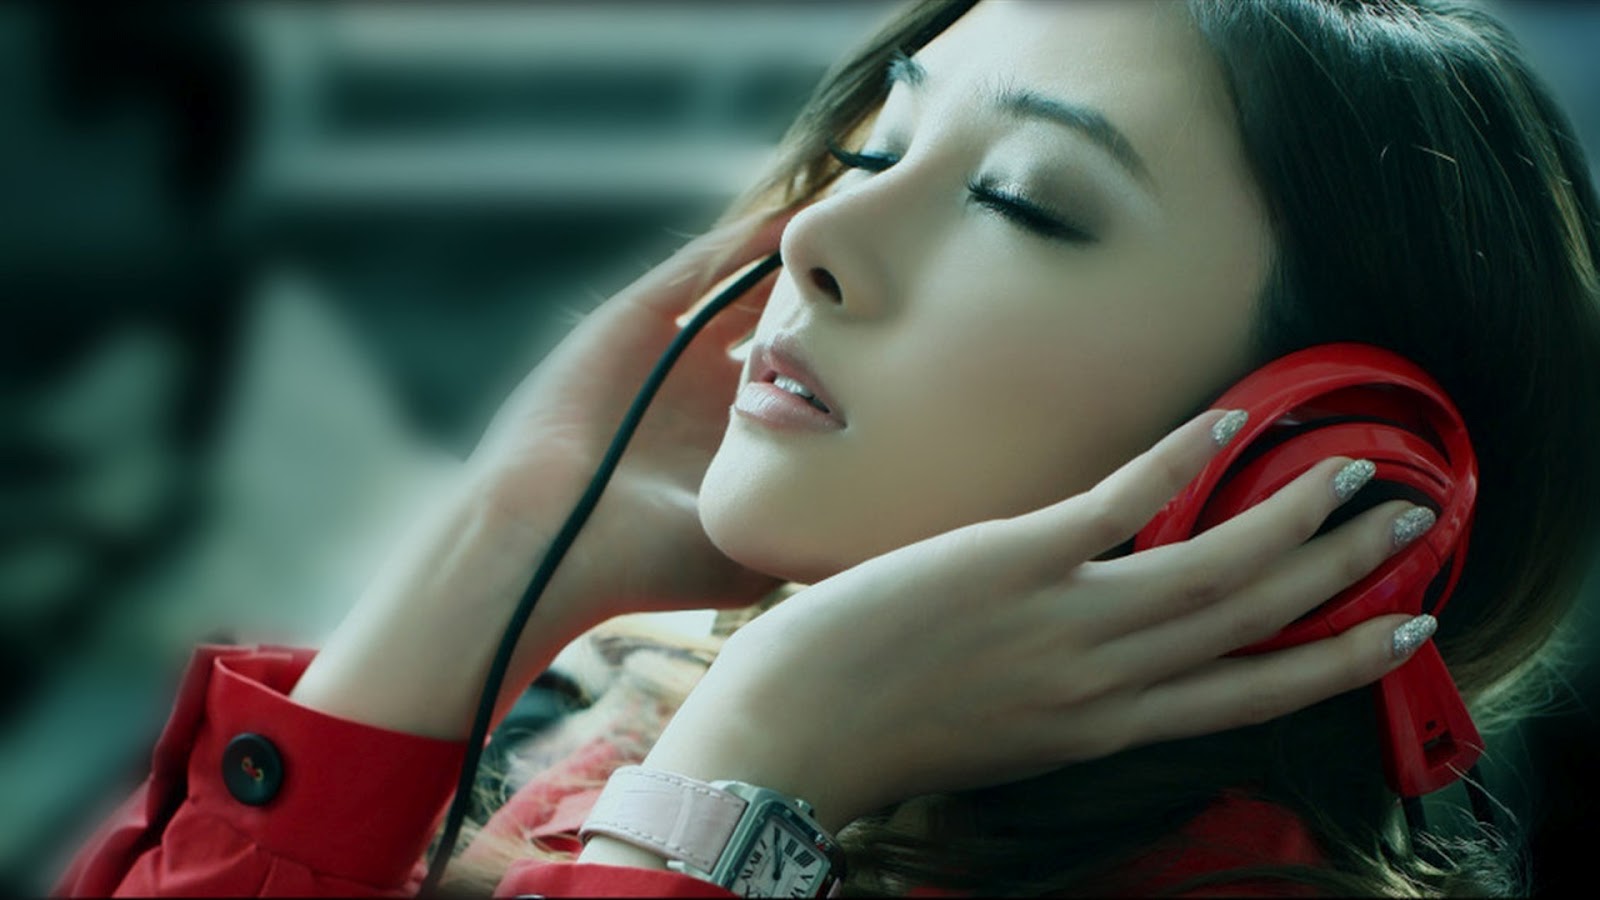 Mystery Wallpaper Music Headphones Girl Asian